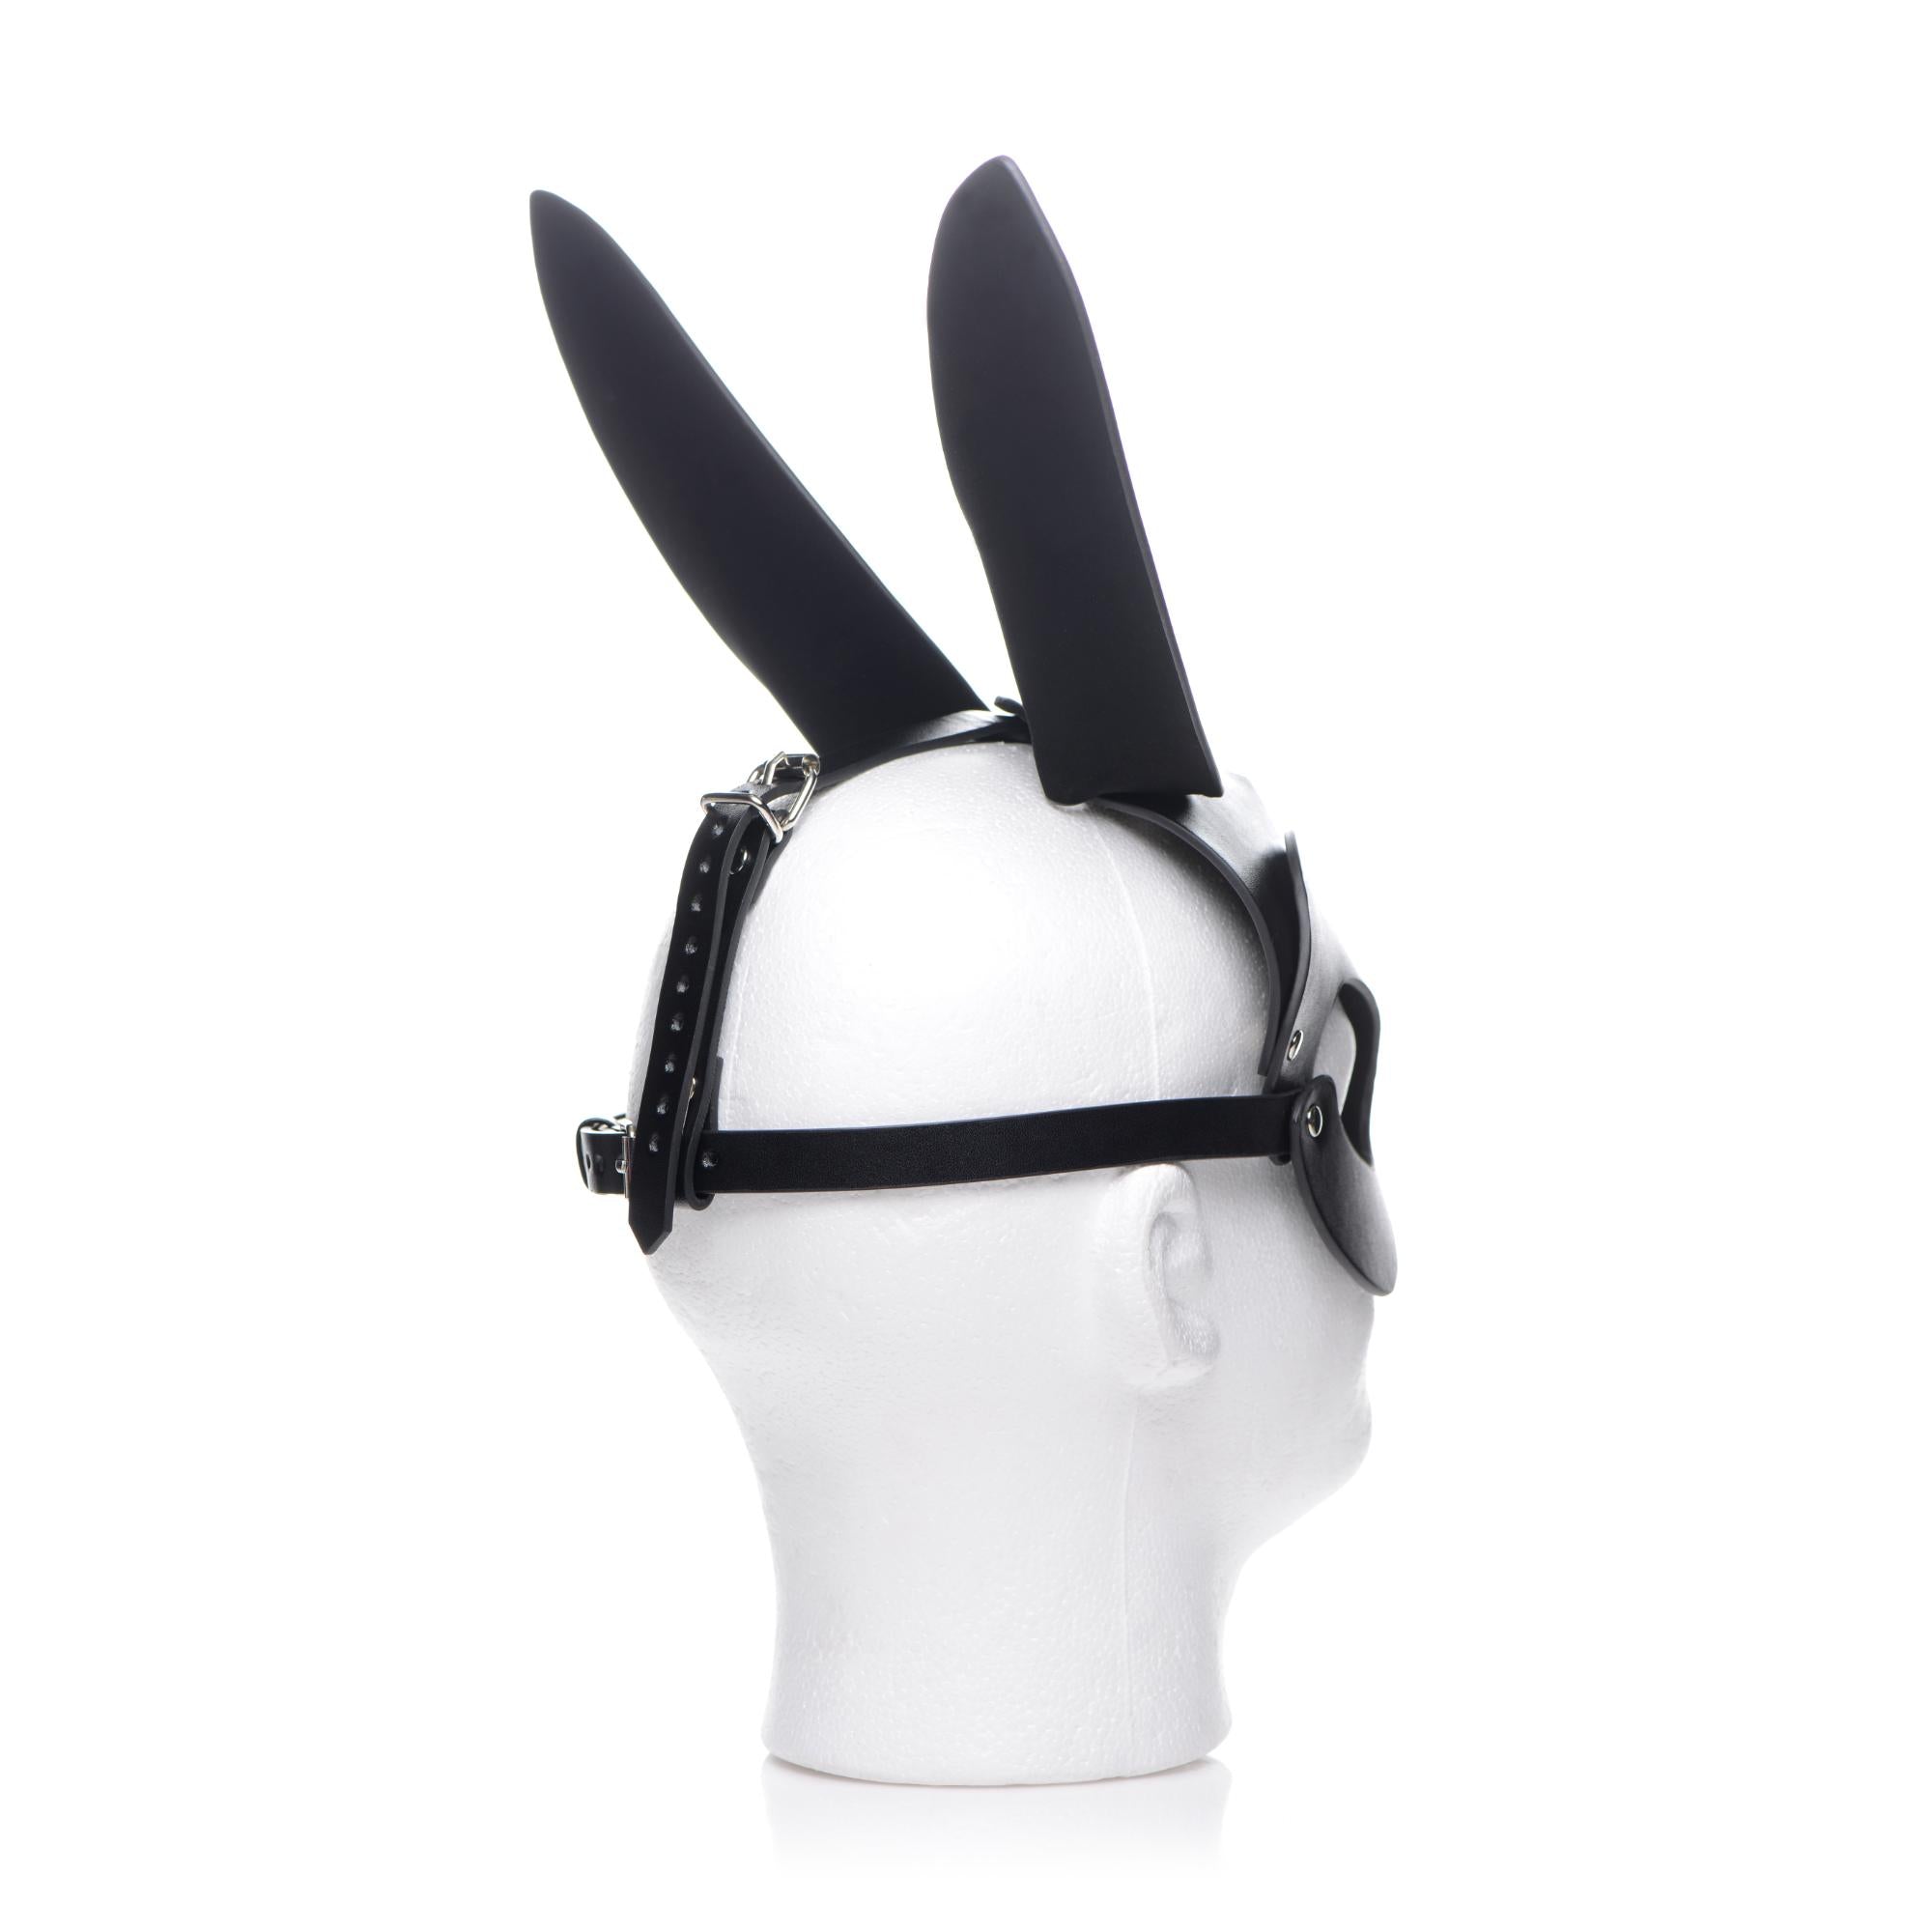 Tailz Bunny Tail Anal Plug and Mask Set